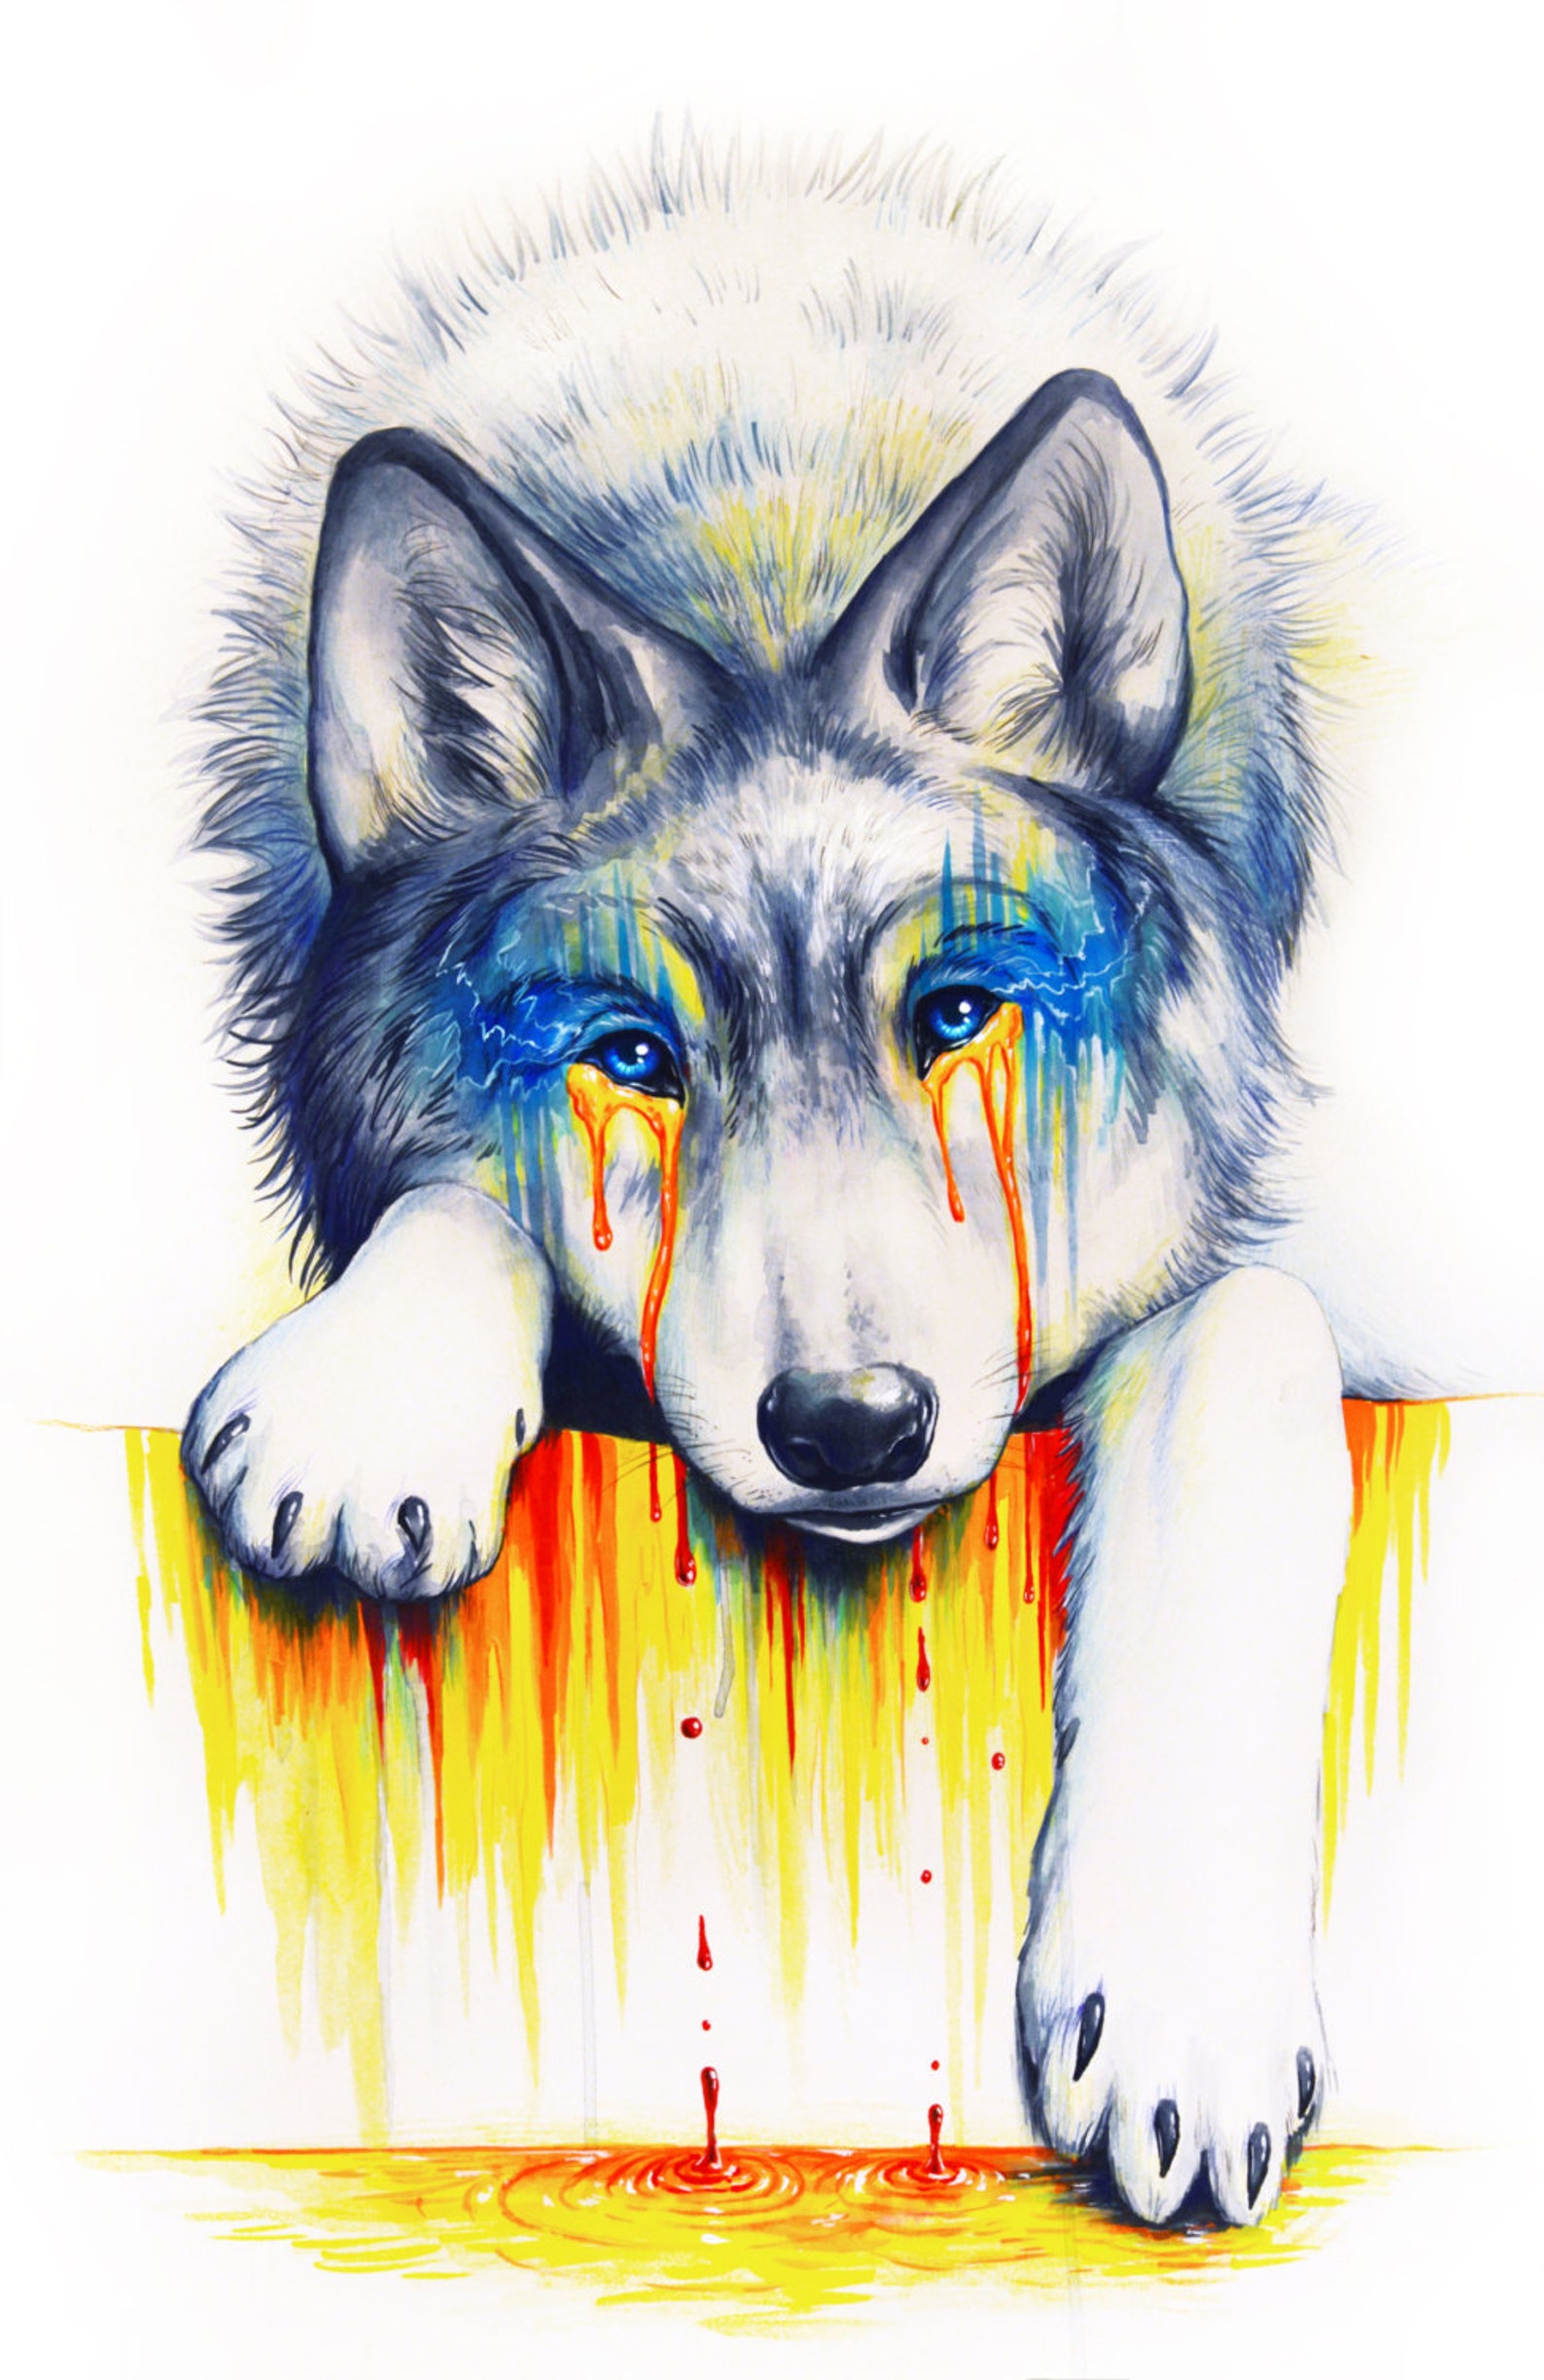 Цветные картинки волка. Jonas Jödicke волк. Волк рисунок. Волк арт. Картинки нарисованных Волков.